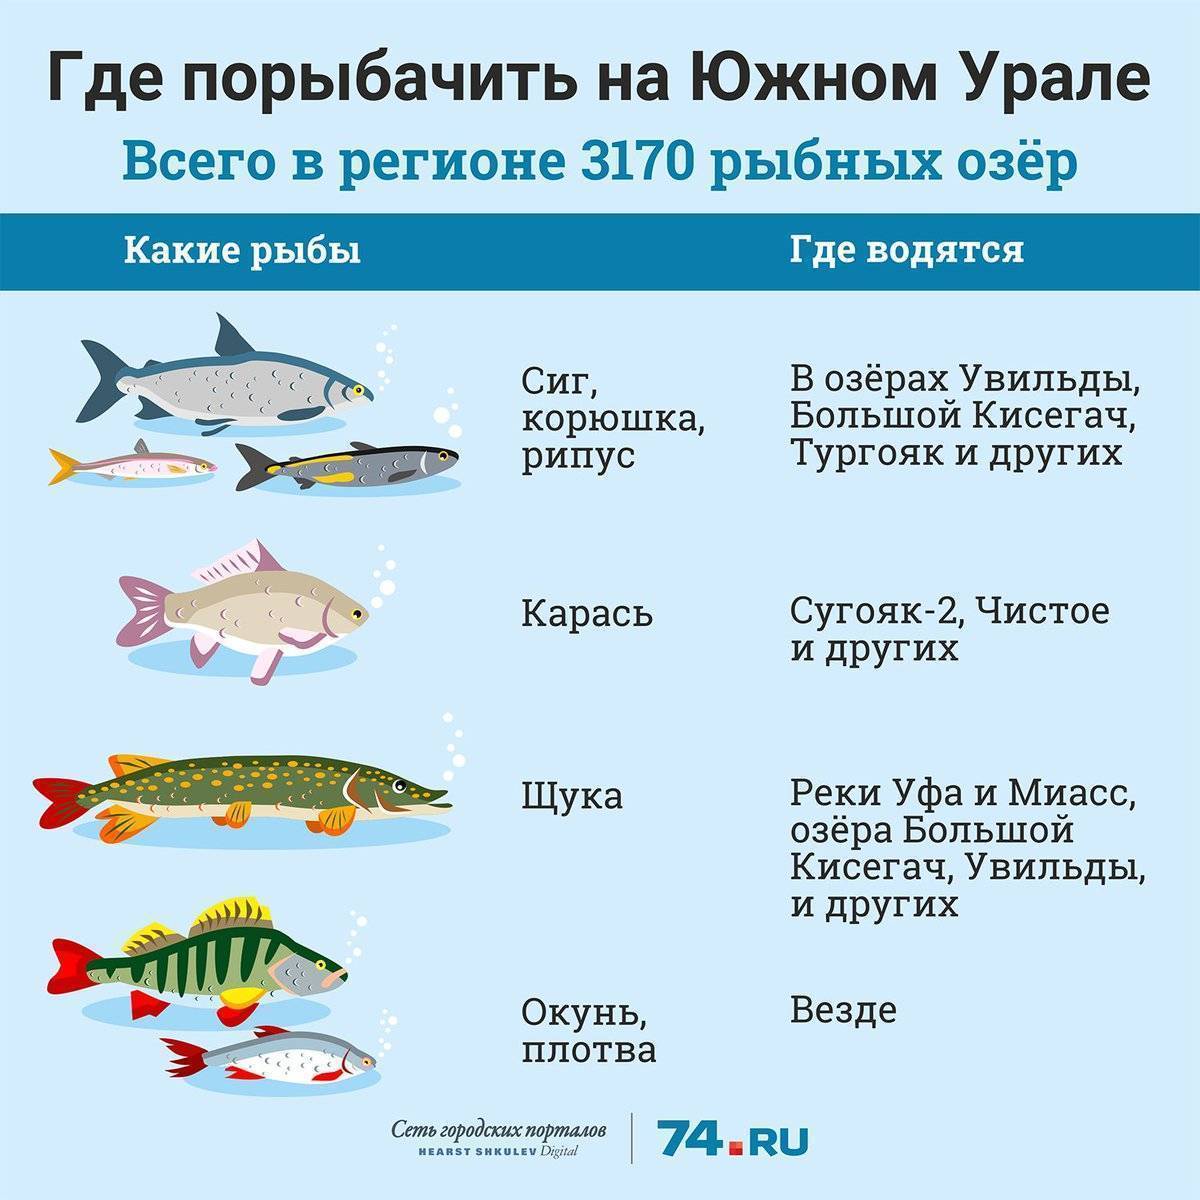 какое место занимает россия по вылову рыбы